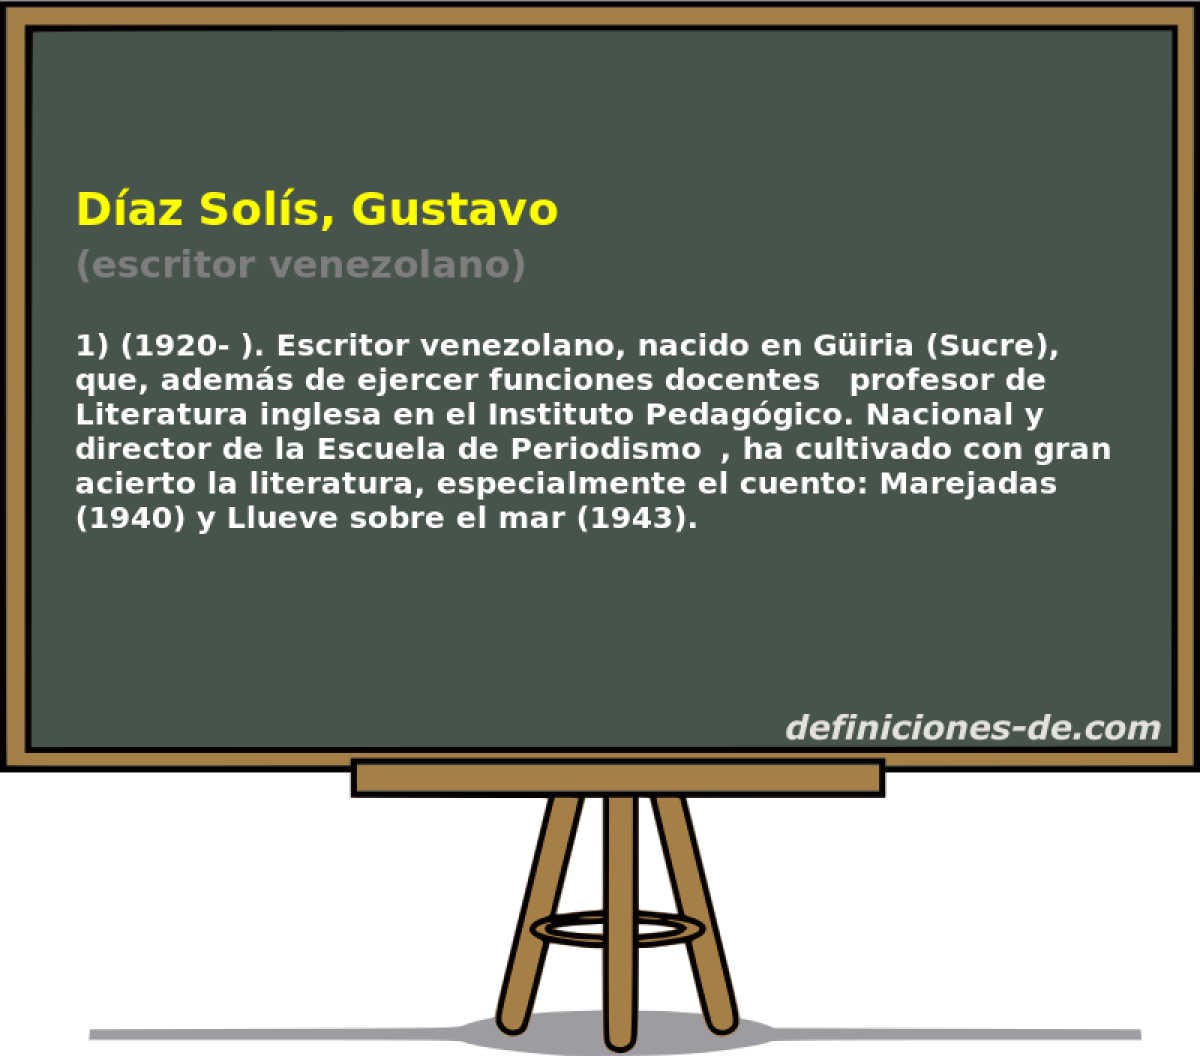 Daz Sols, Gustavo (escritor venezolano)